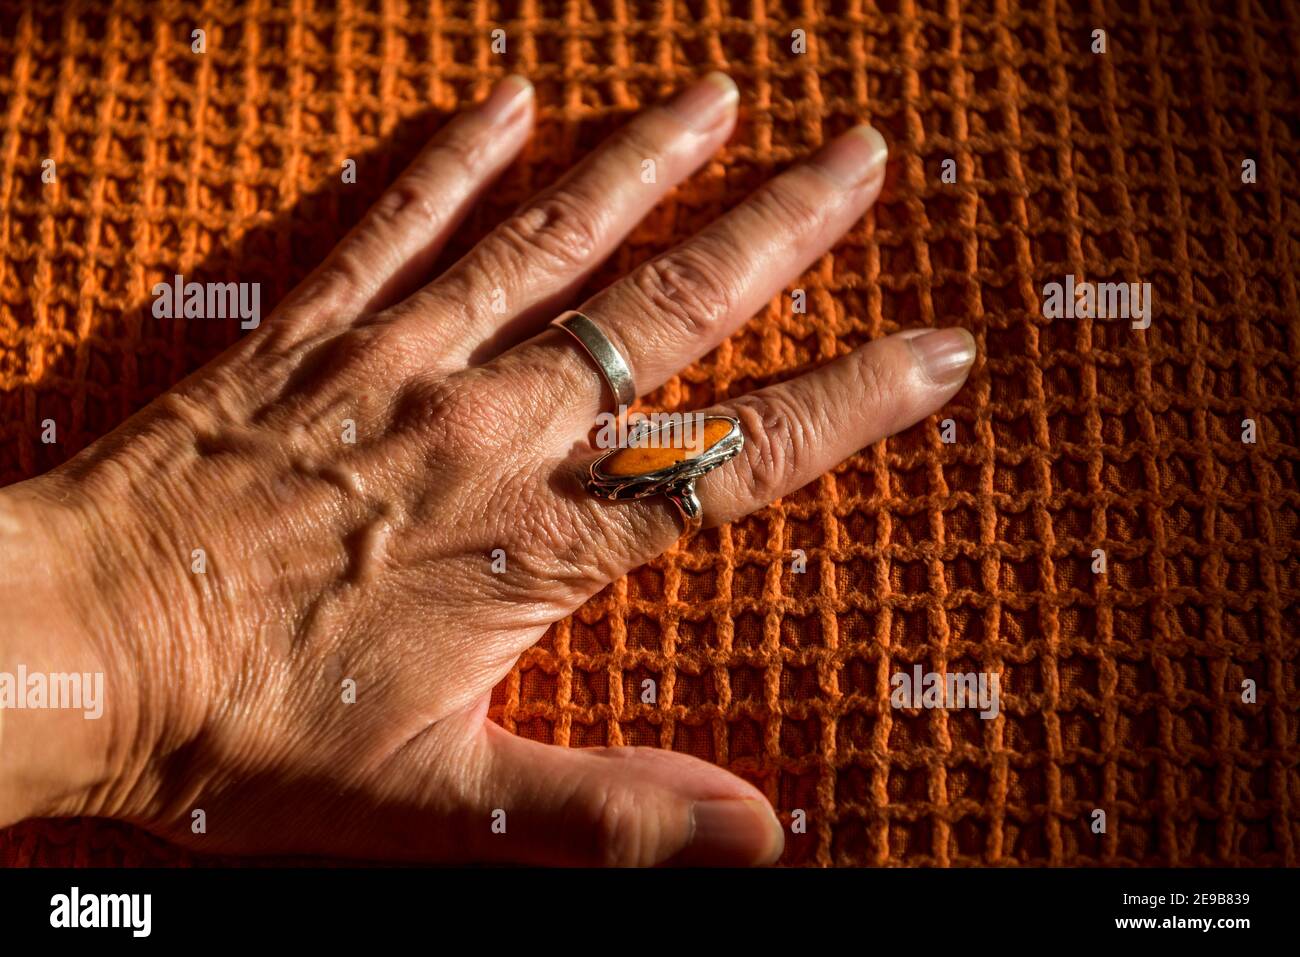 Mano femenina con un anillo naranja en una cubierta naranja Foto de stock